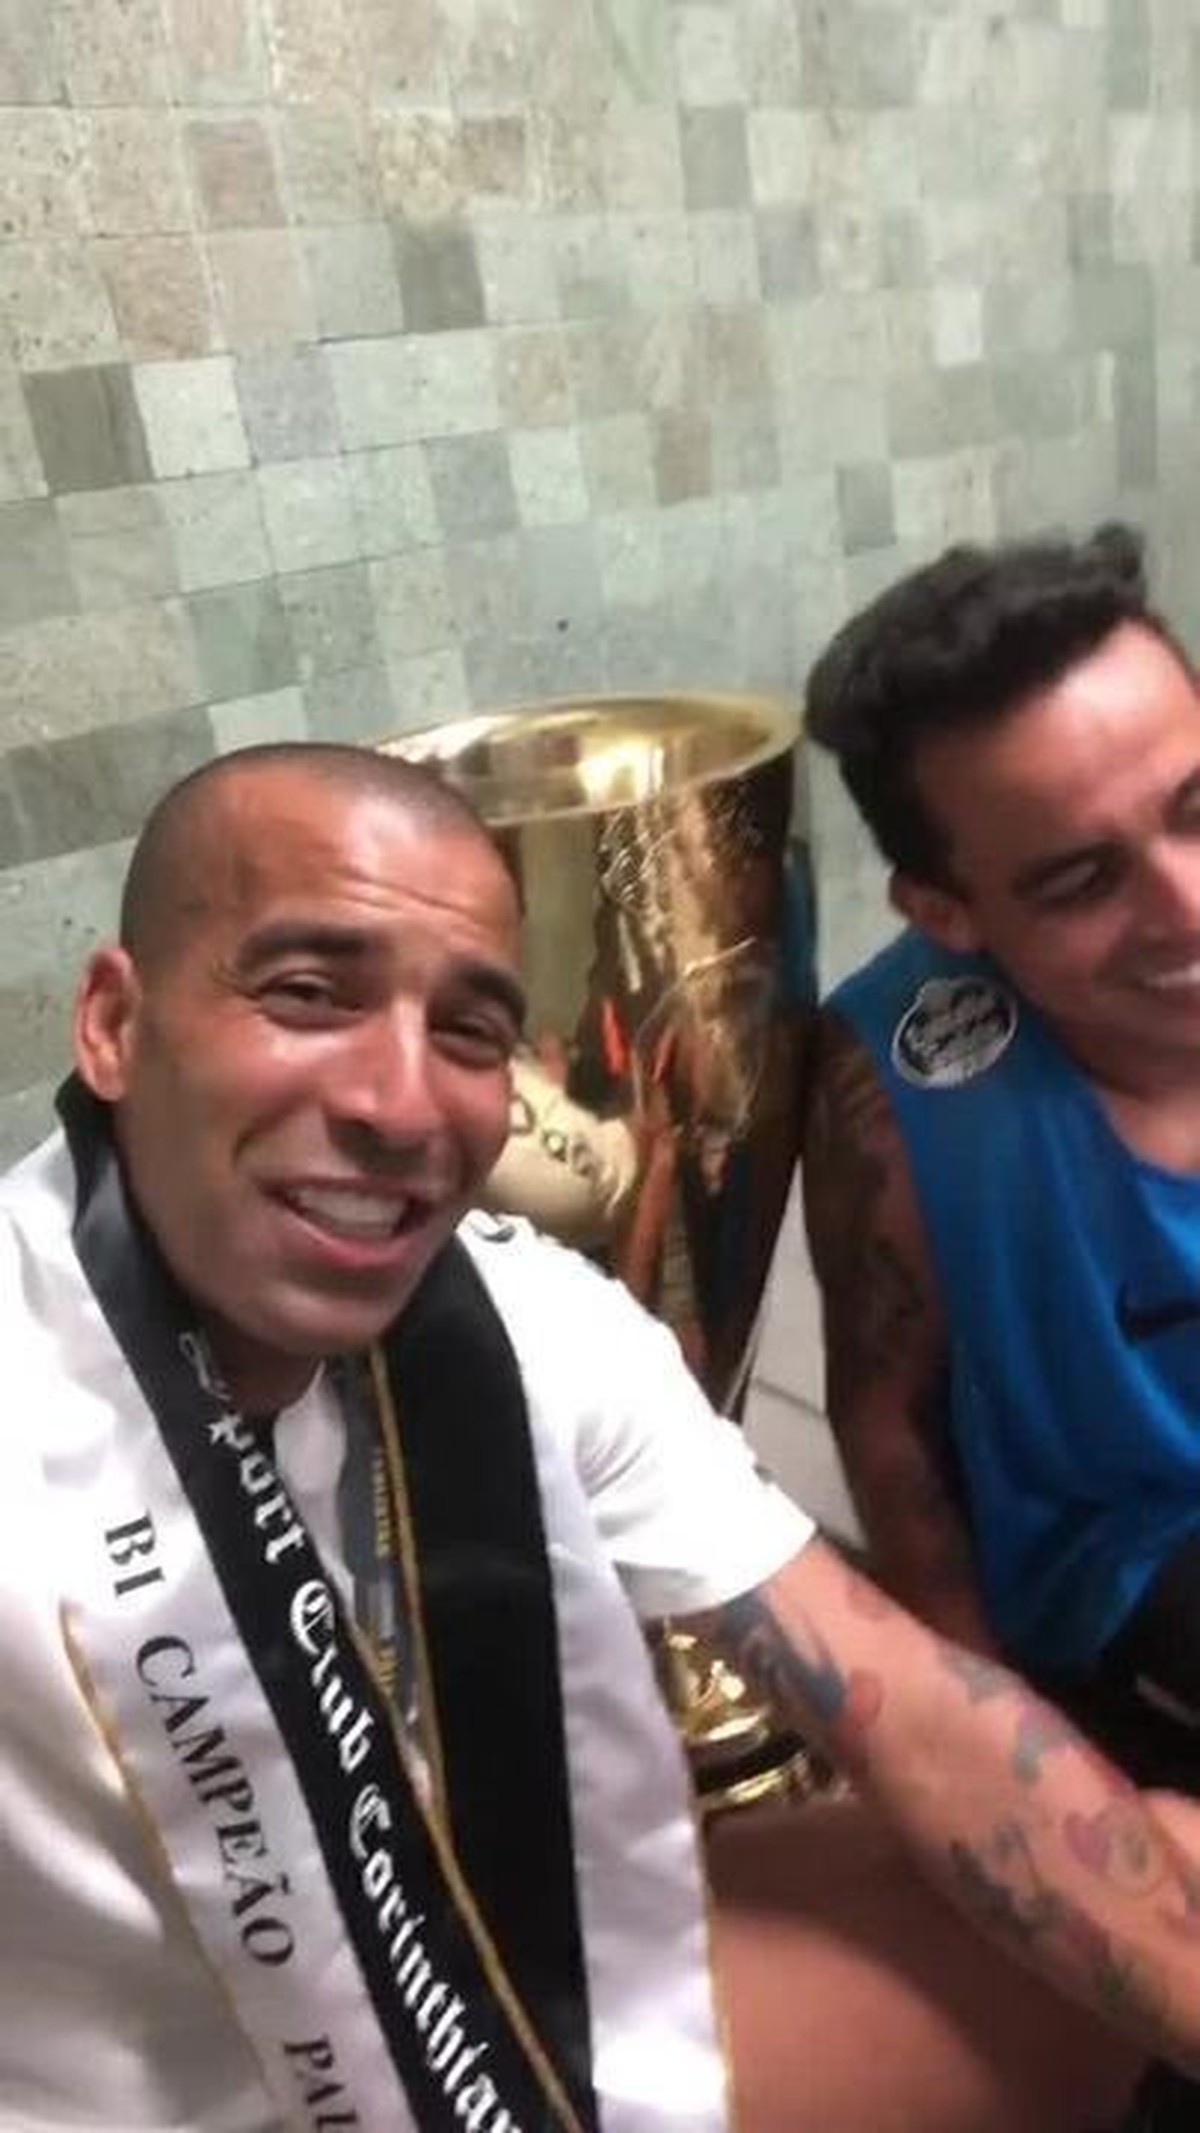 Poupado, Emerson Sheik assiste a clássico entre Corinthians e Palmeiras com  os filhos e o sócio - Esporte - Extra Online